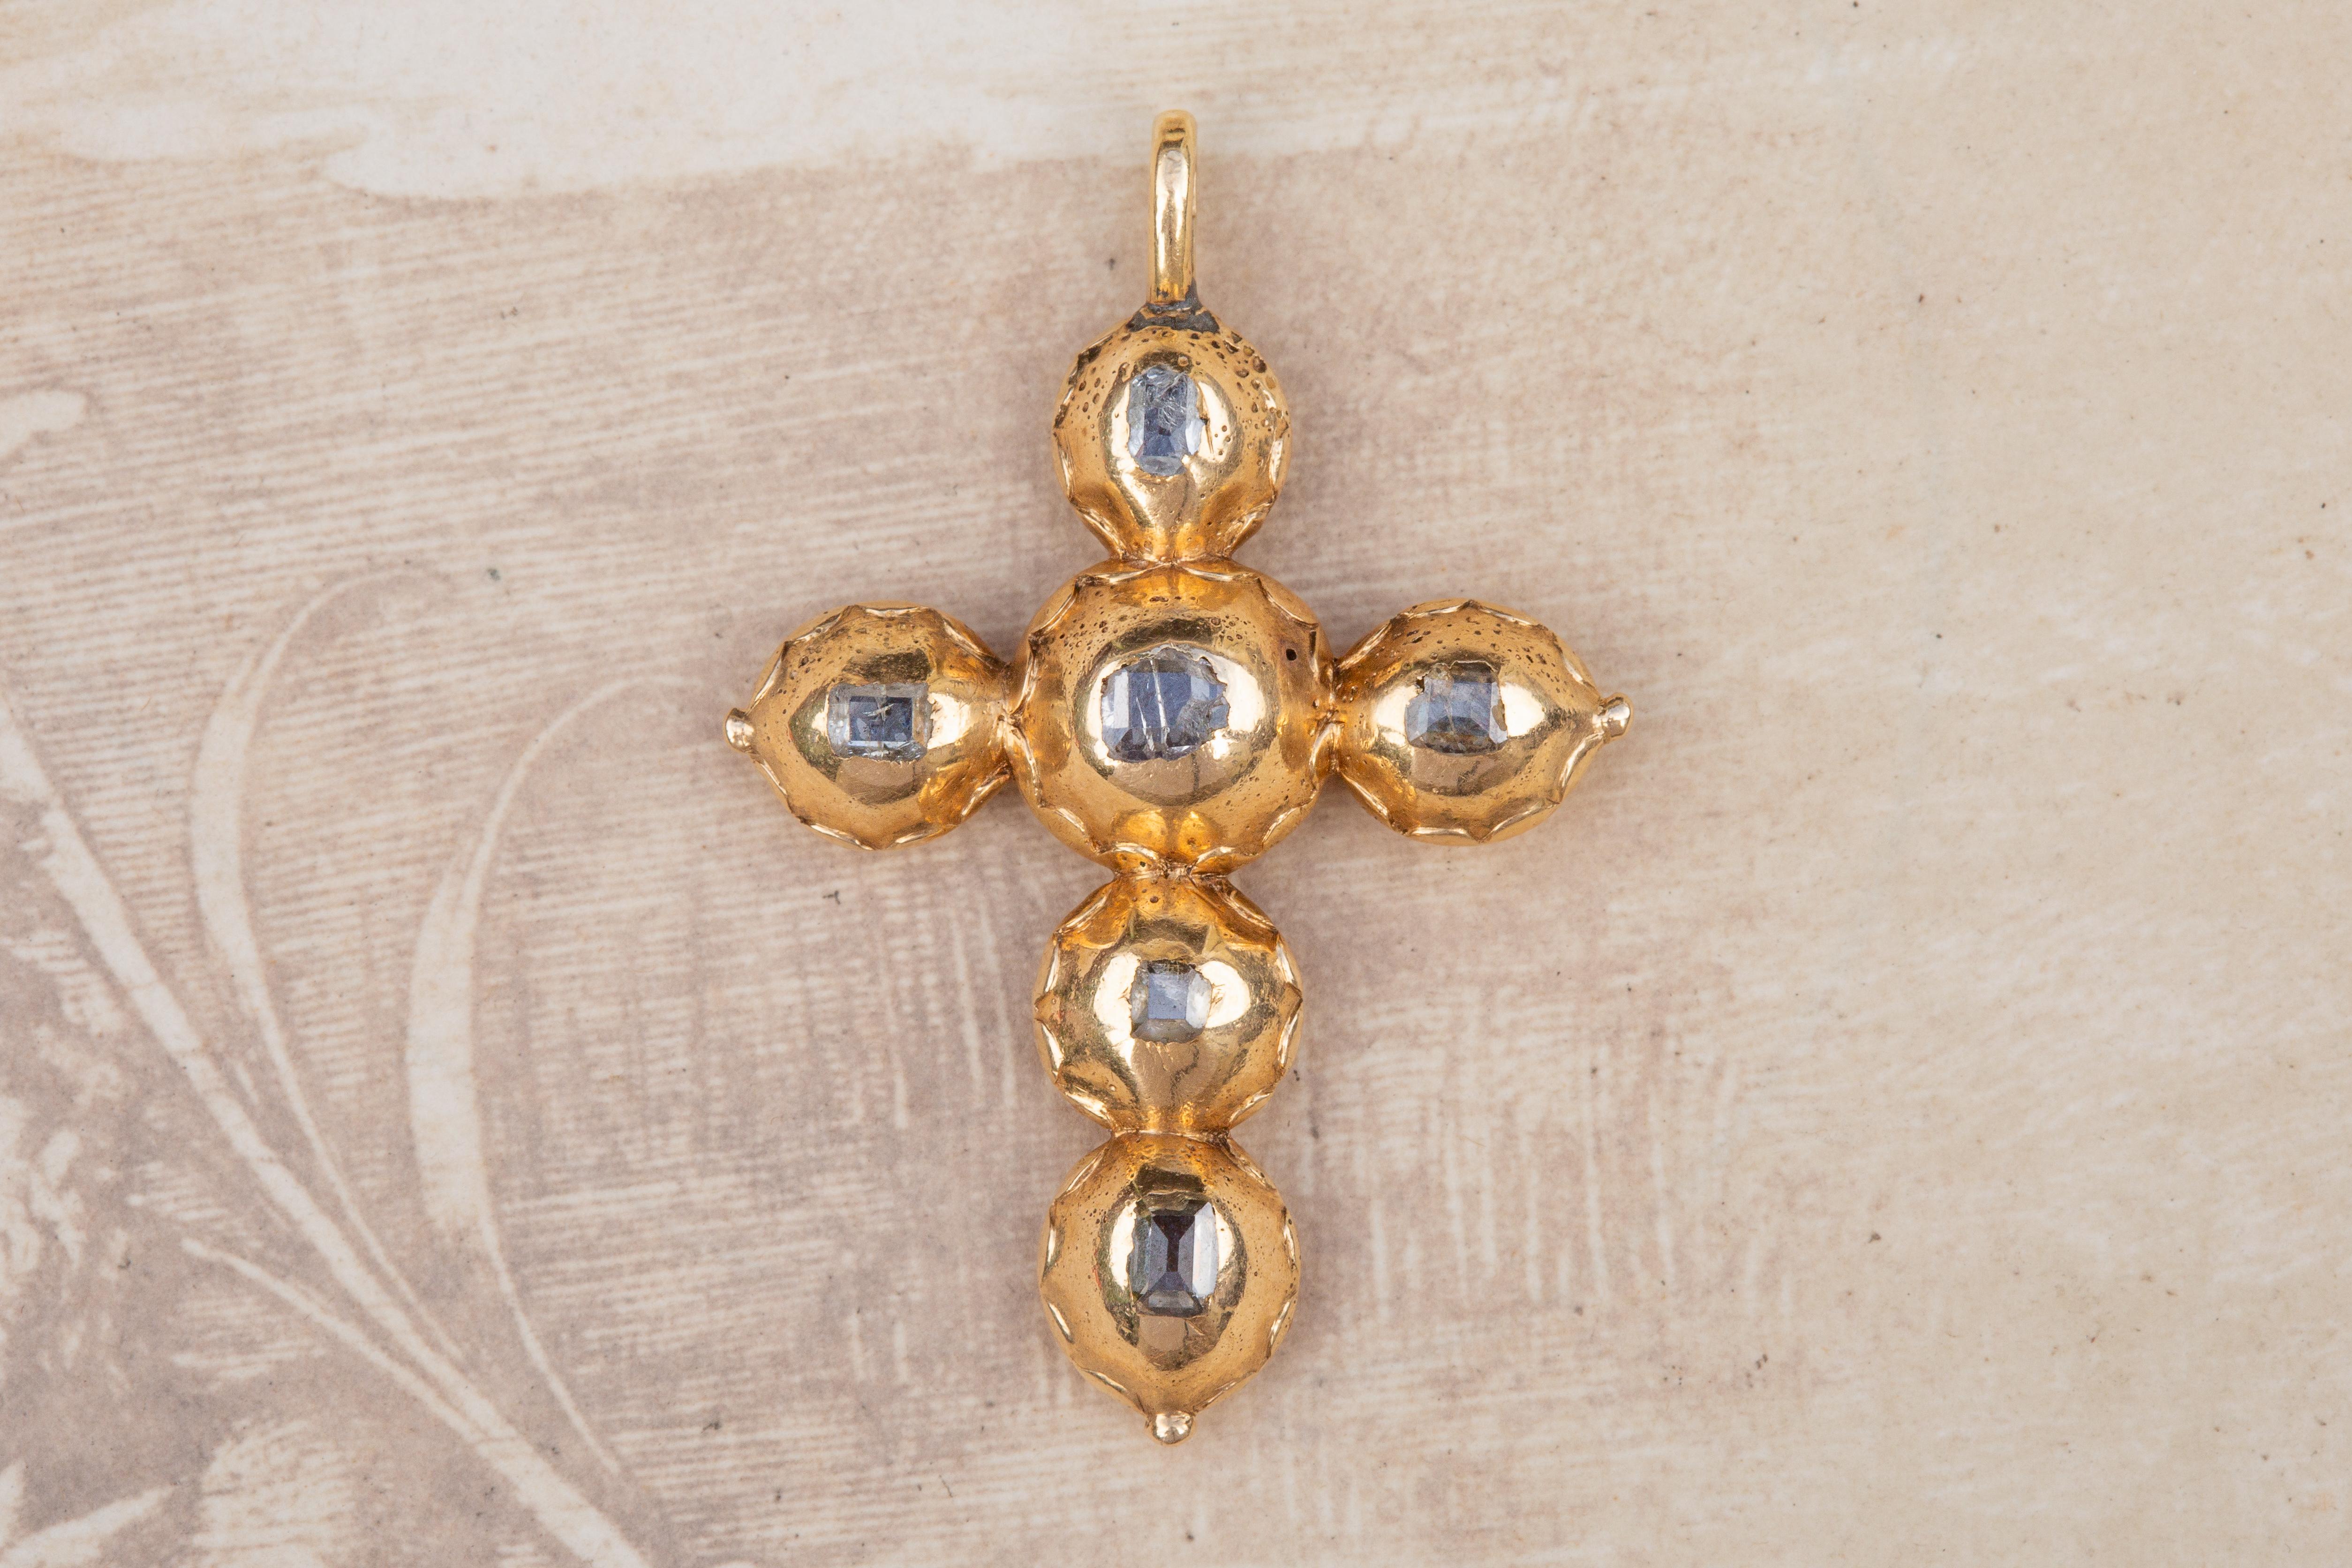 Rare pendentif en forme de croix en diamant baroque taillé en table, datant du début du XVIIIe siècle, vers 1700-1720 et probablement d'Europe occidentale (Pays-Bas ou Flandres). 

La croix est réalisée en or jaune 14 carats et sertie de six